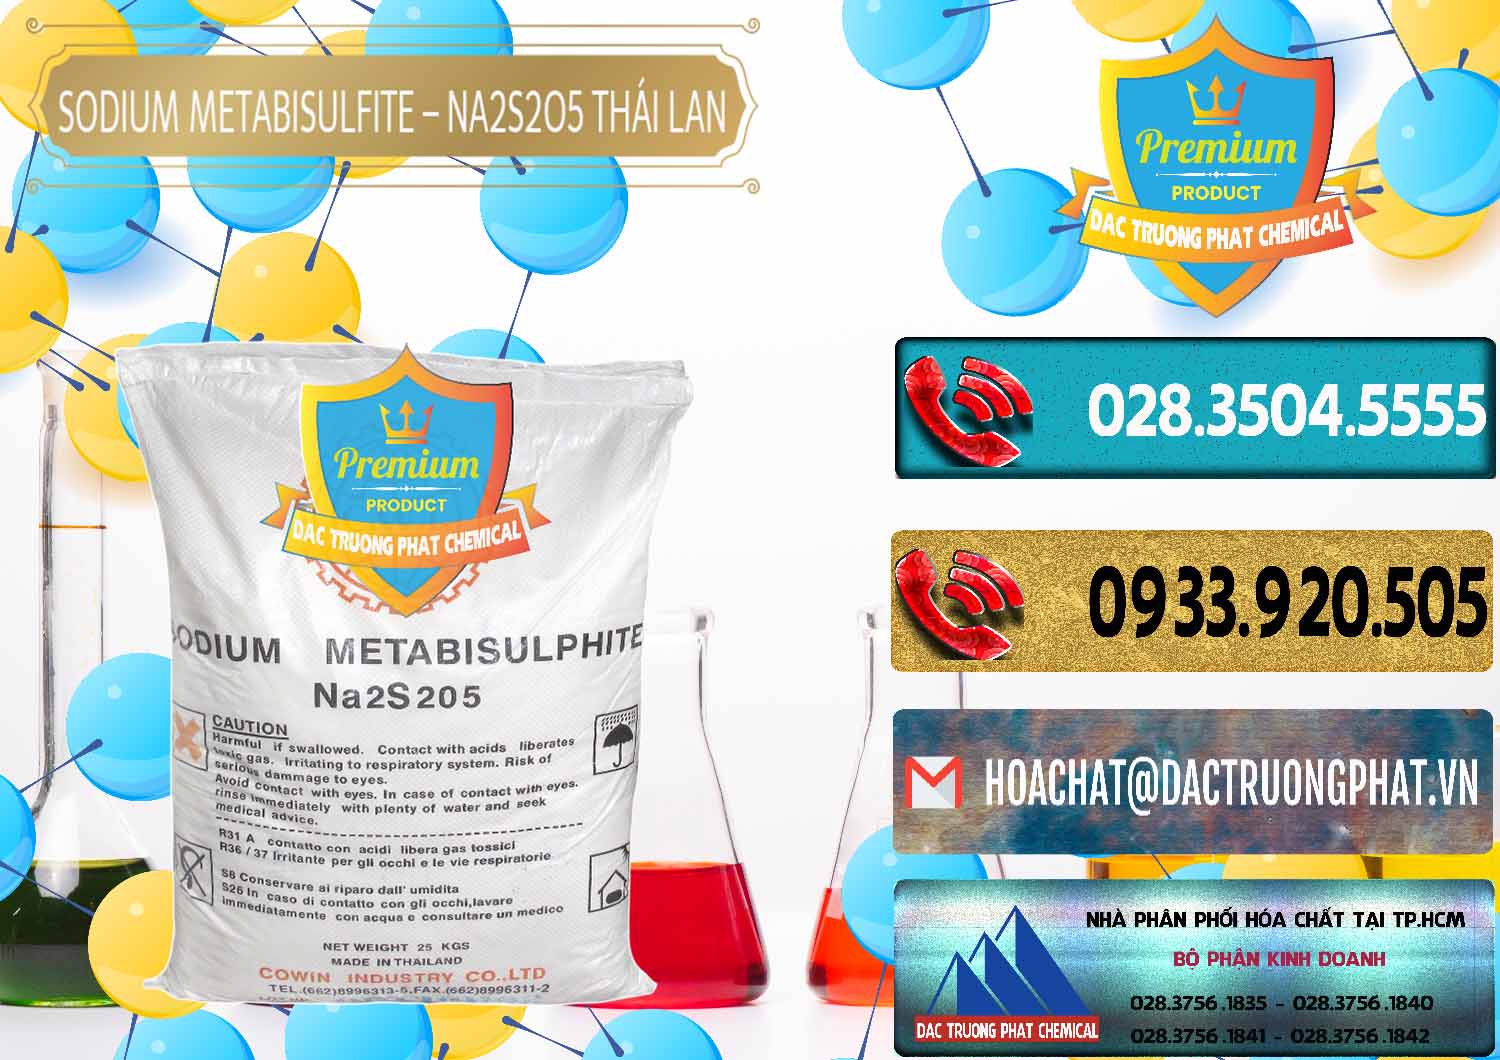 Cty chuyên bán _ cung ứng Sodium Metabisulfite - NA2S2O5 Thái Lan Cowin - 0145 - Đơn vị chuyên cung cấp - kinh doanh hóa chất tại TP.HCM - hoachatdetnhuom.com